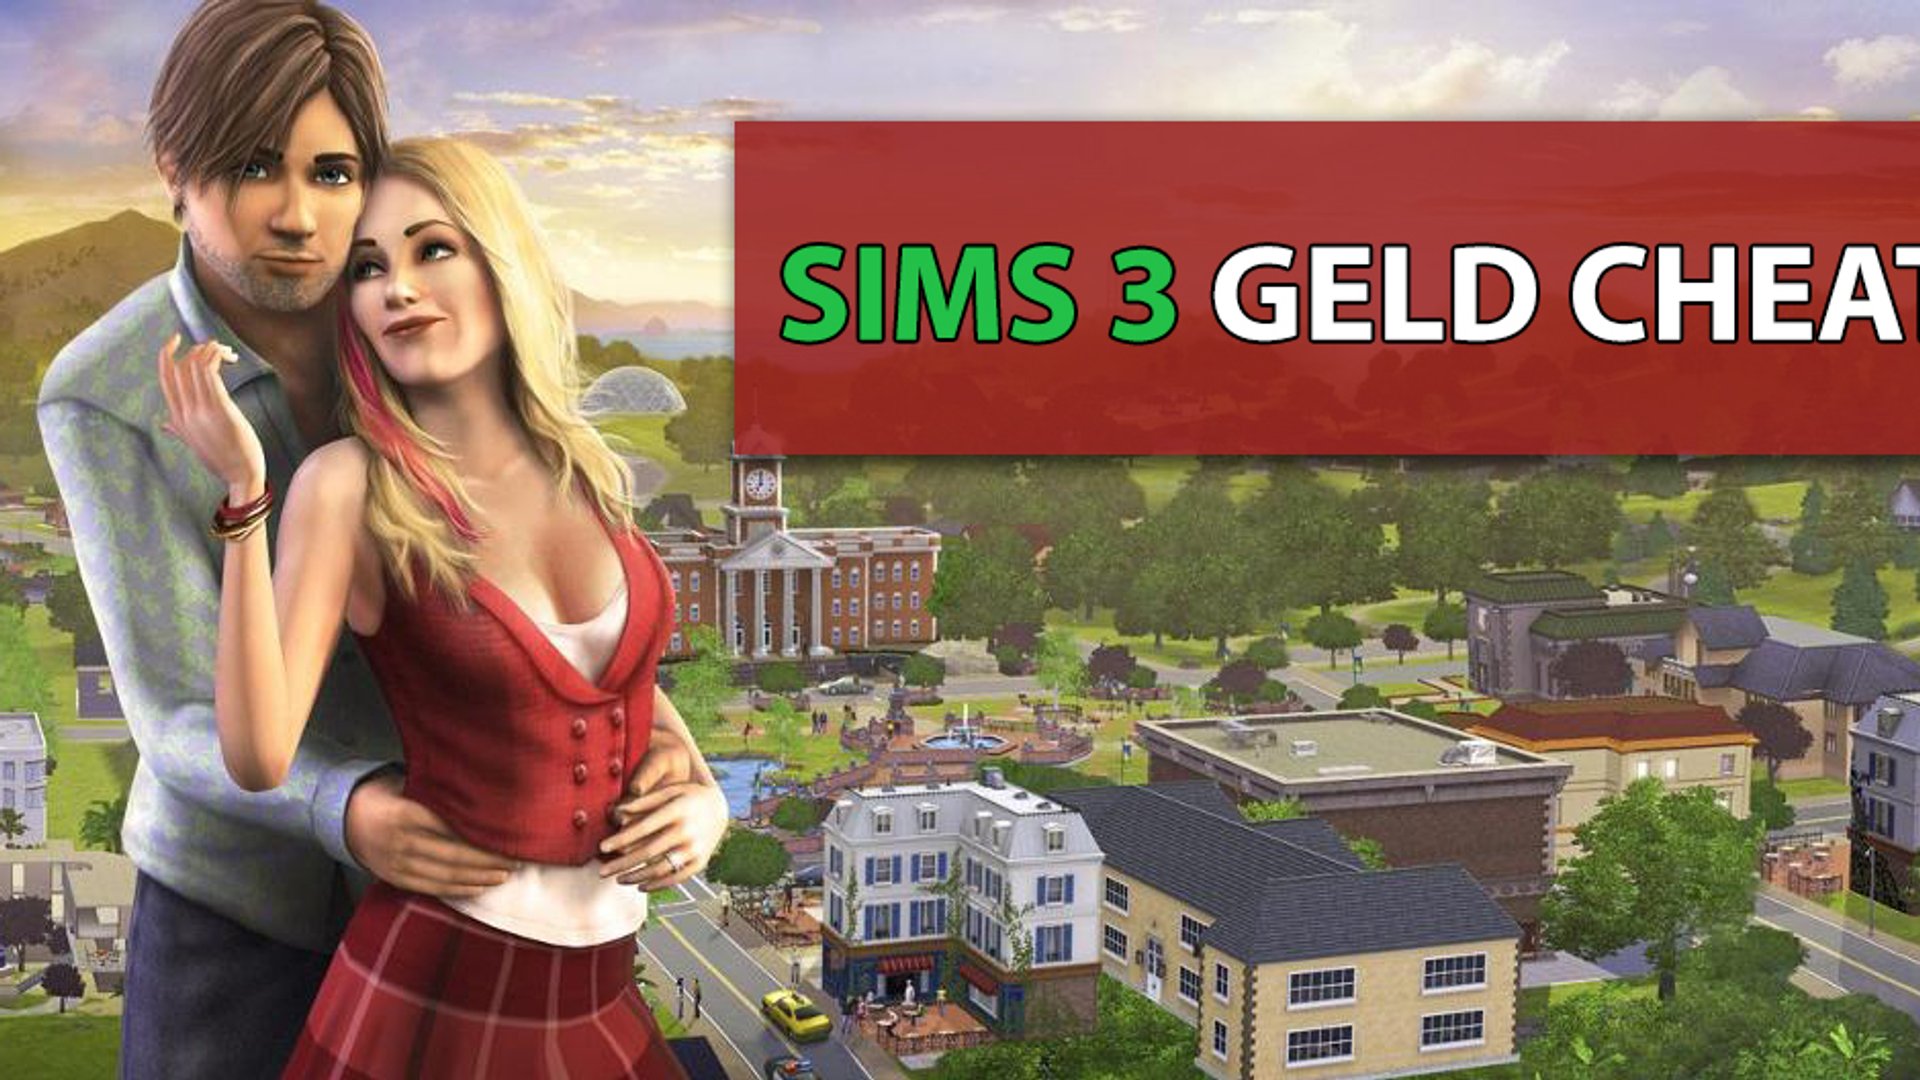 Veronderstellen Bijdragen Uitleg Sims 3 Geld Cheat: So bekommst du viele Simoleons!